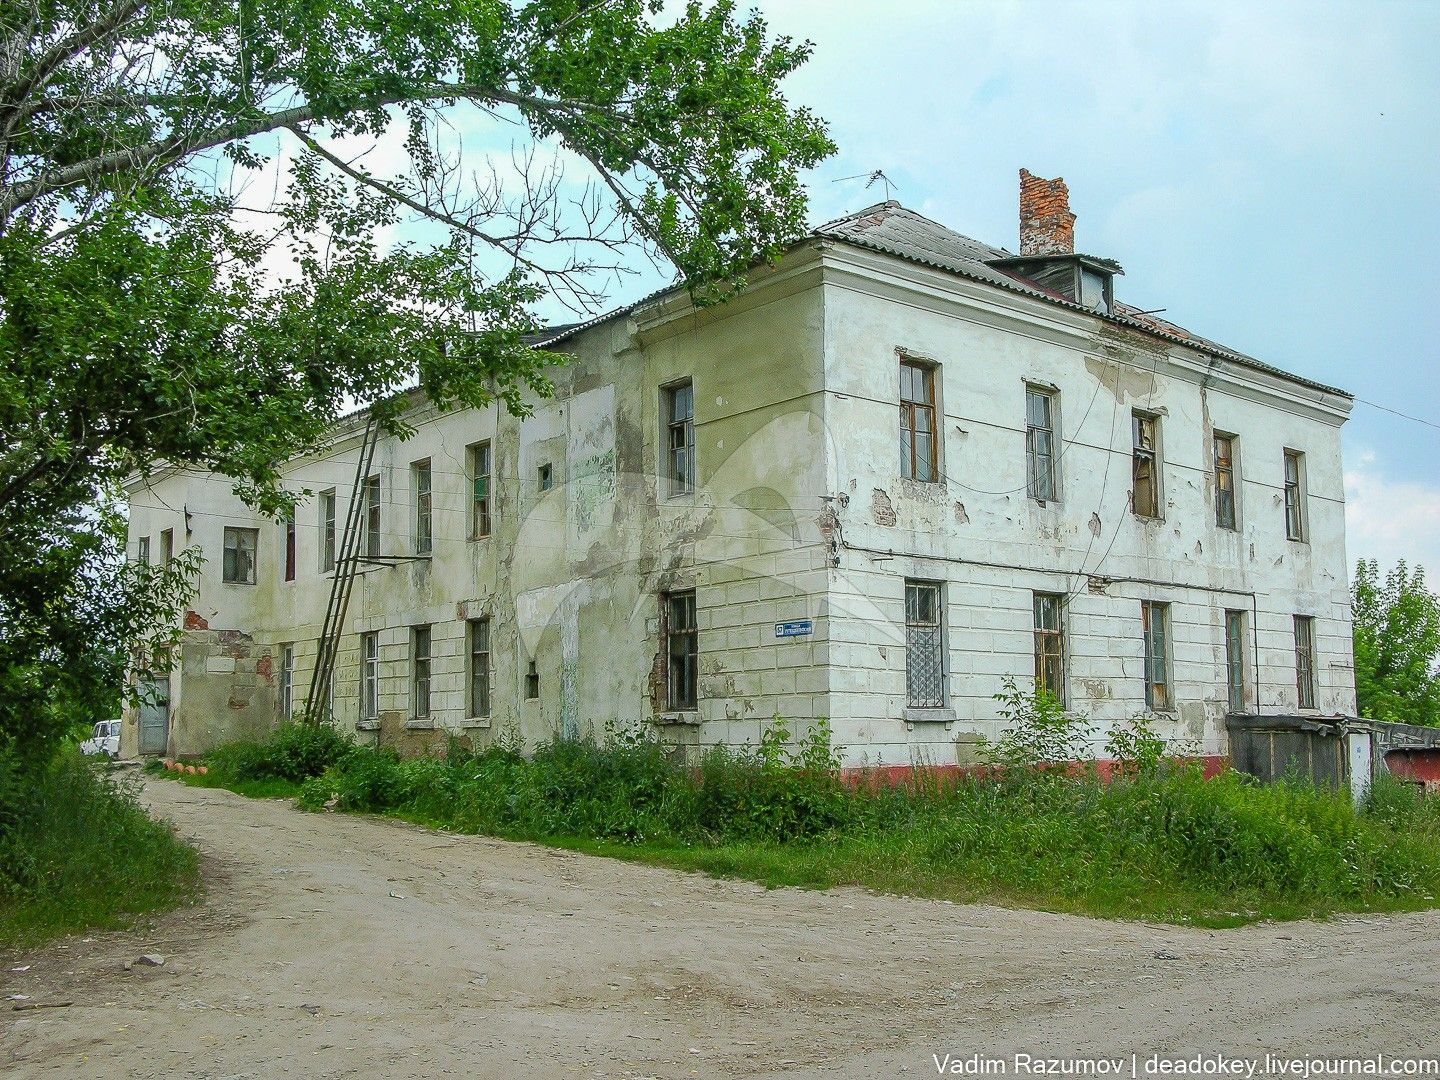 Главный дом, усадьба фон-Мекк Н.Ф., в которой в 1884-1885 гг. жил композитор Чайковский Петр Ильич